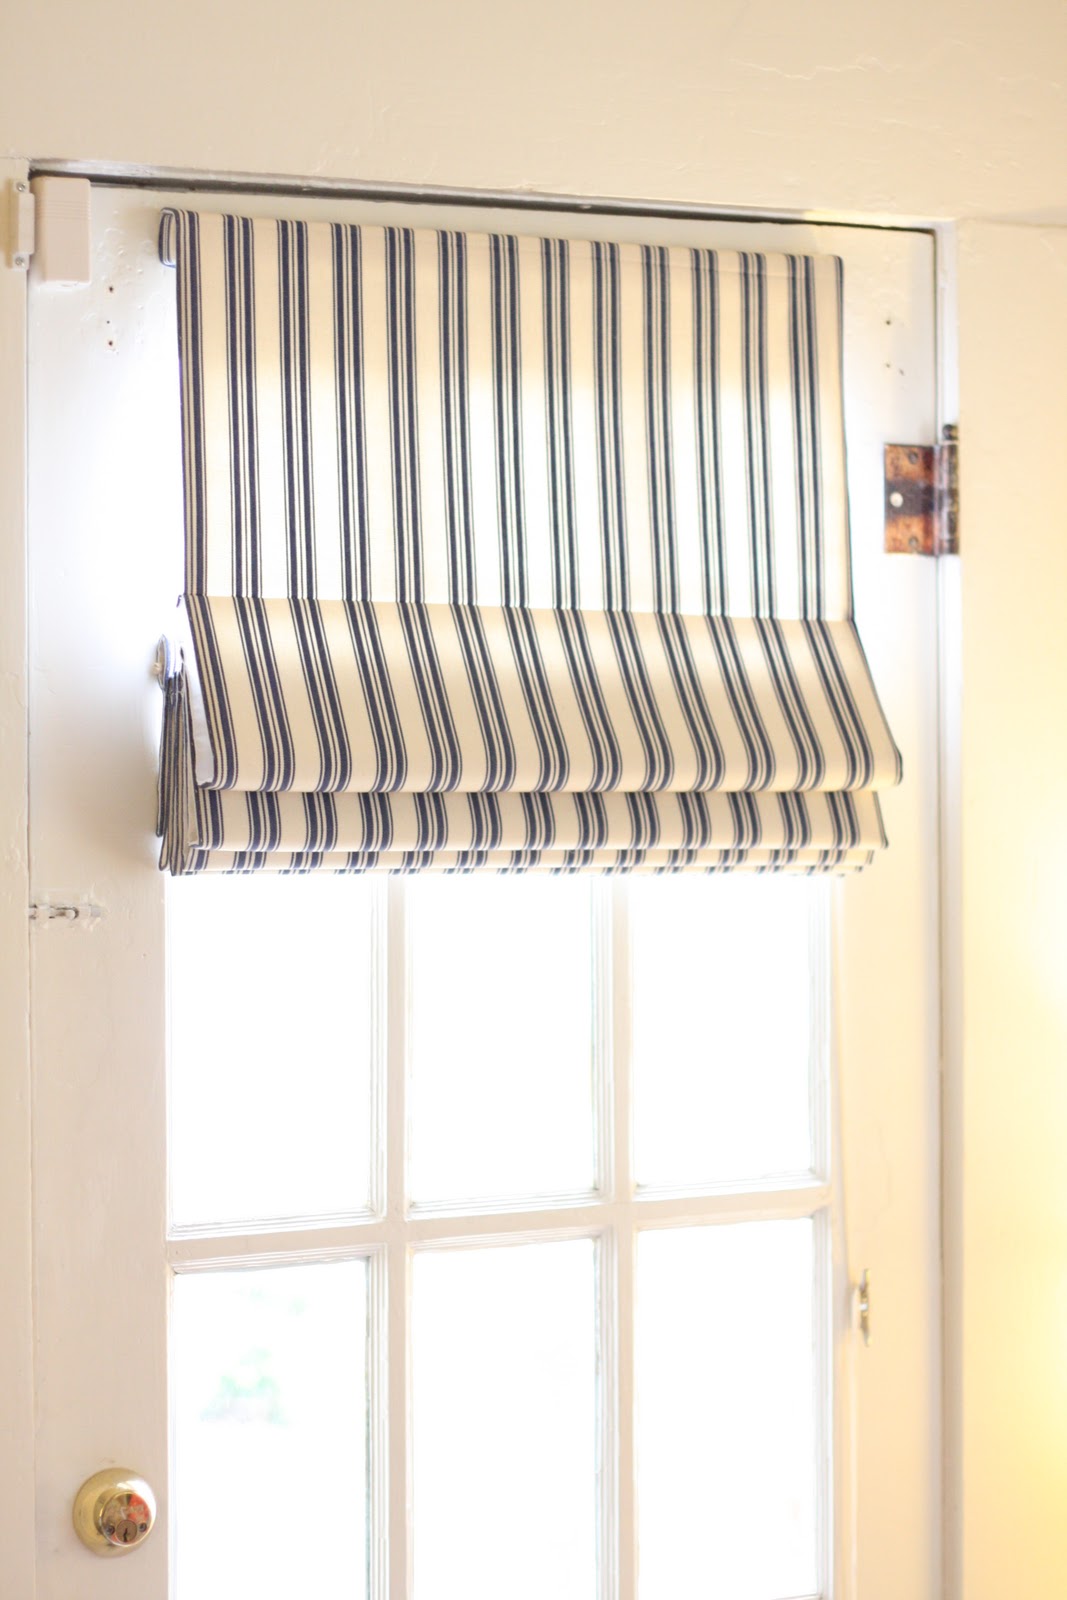 Curtain Ideas For Curved Windows Curtains For Sunroom Ideas